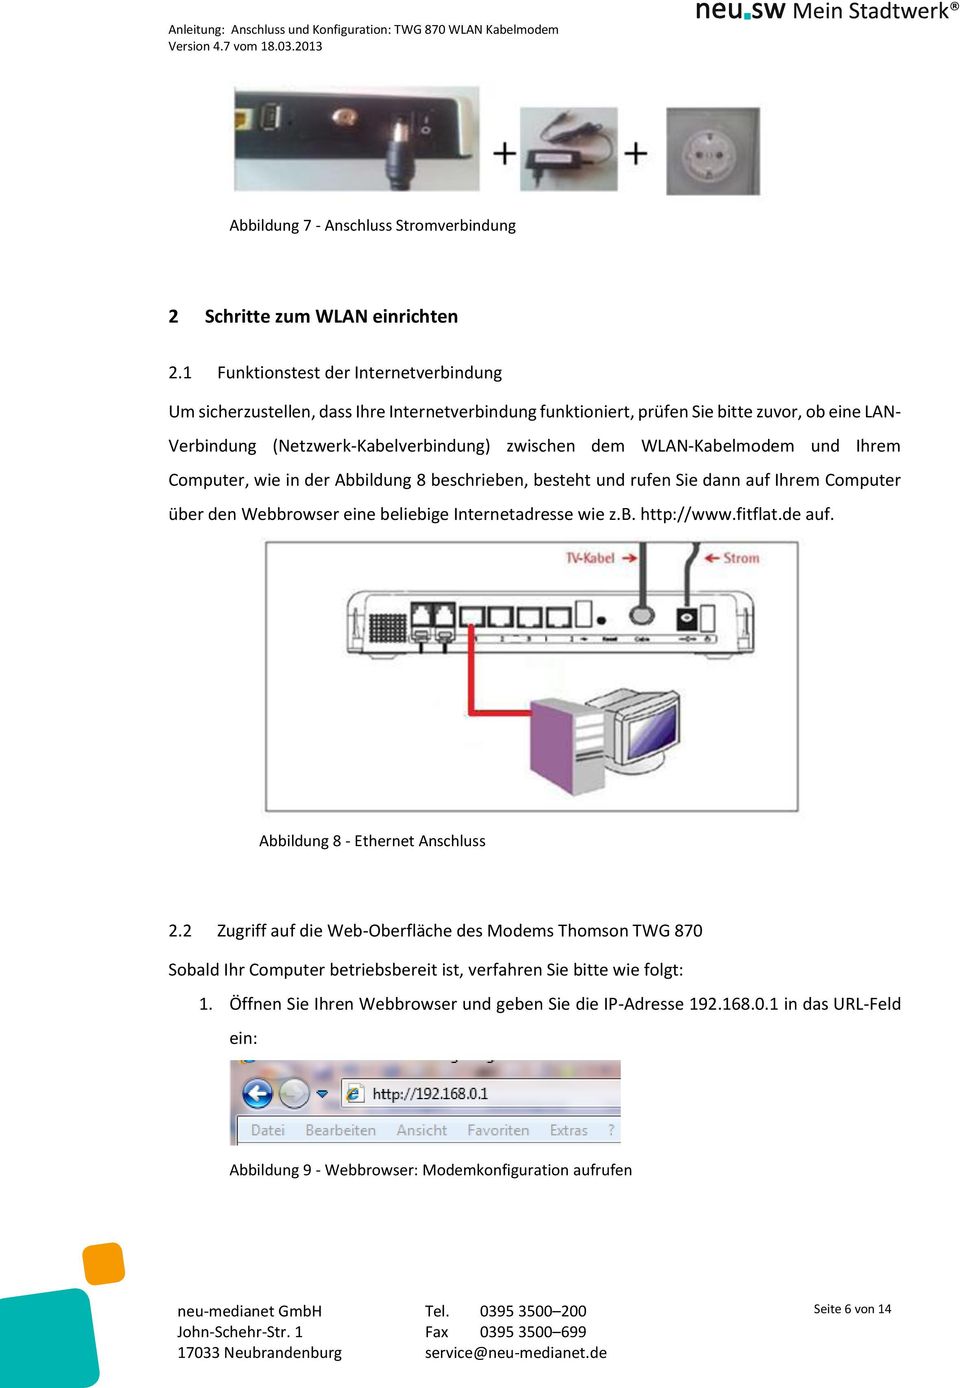 WLAN-Kabelmodem und Ihrem Computer, wie in der Abbildung 8 beschrieben, besteht und rufen Sie dann auf Ihrem Computer über den Webbrowser eine beliebige Internetadresse wie z.b. http://www.fitflat.